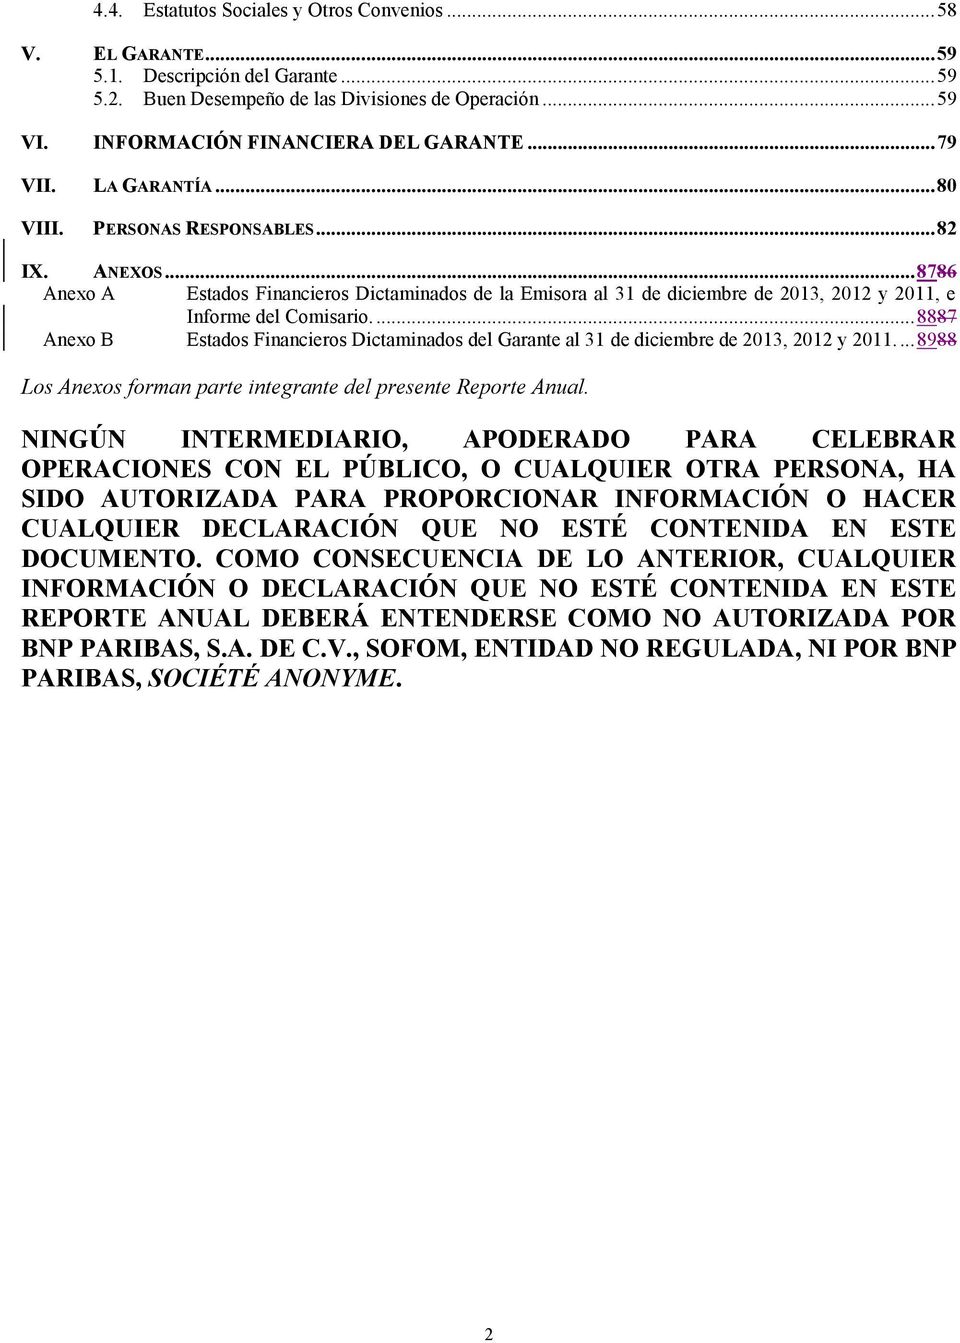 ... 8887 Anexo B Estados Financieros Dictaminados del Garante al 31 de diciembre de 2013, 2012 y 2011.... 8988 Los Anexos forman parte integrante del presente Reporte Anual.